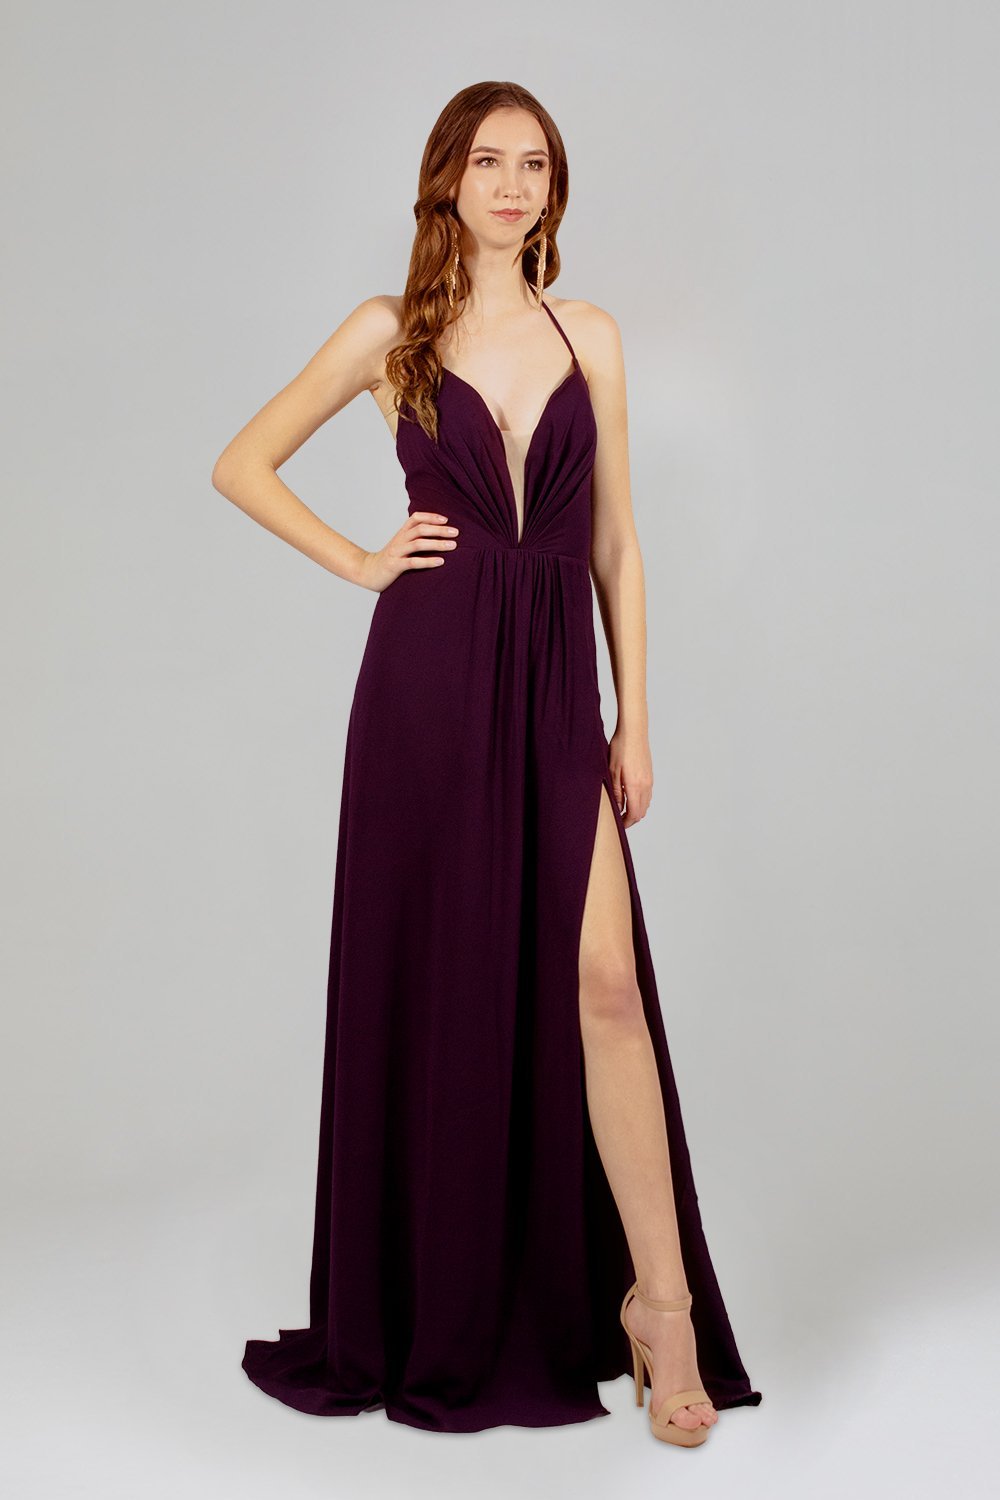 purple chiffon bridesmaid dresses perth australia online envious bridal & formal